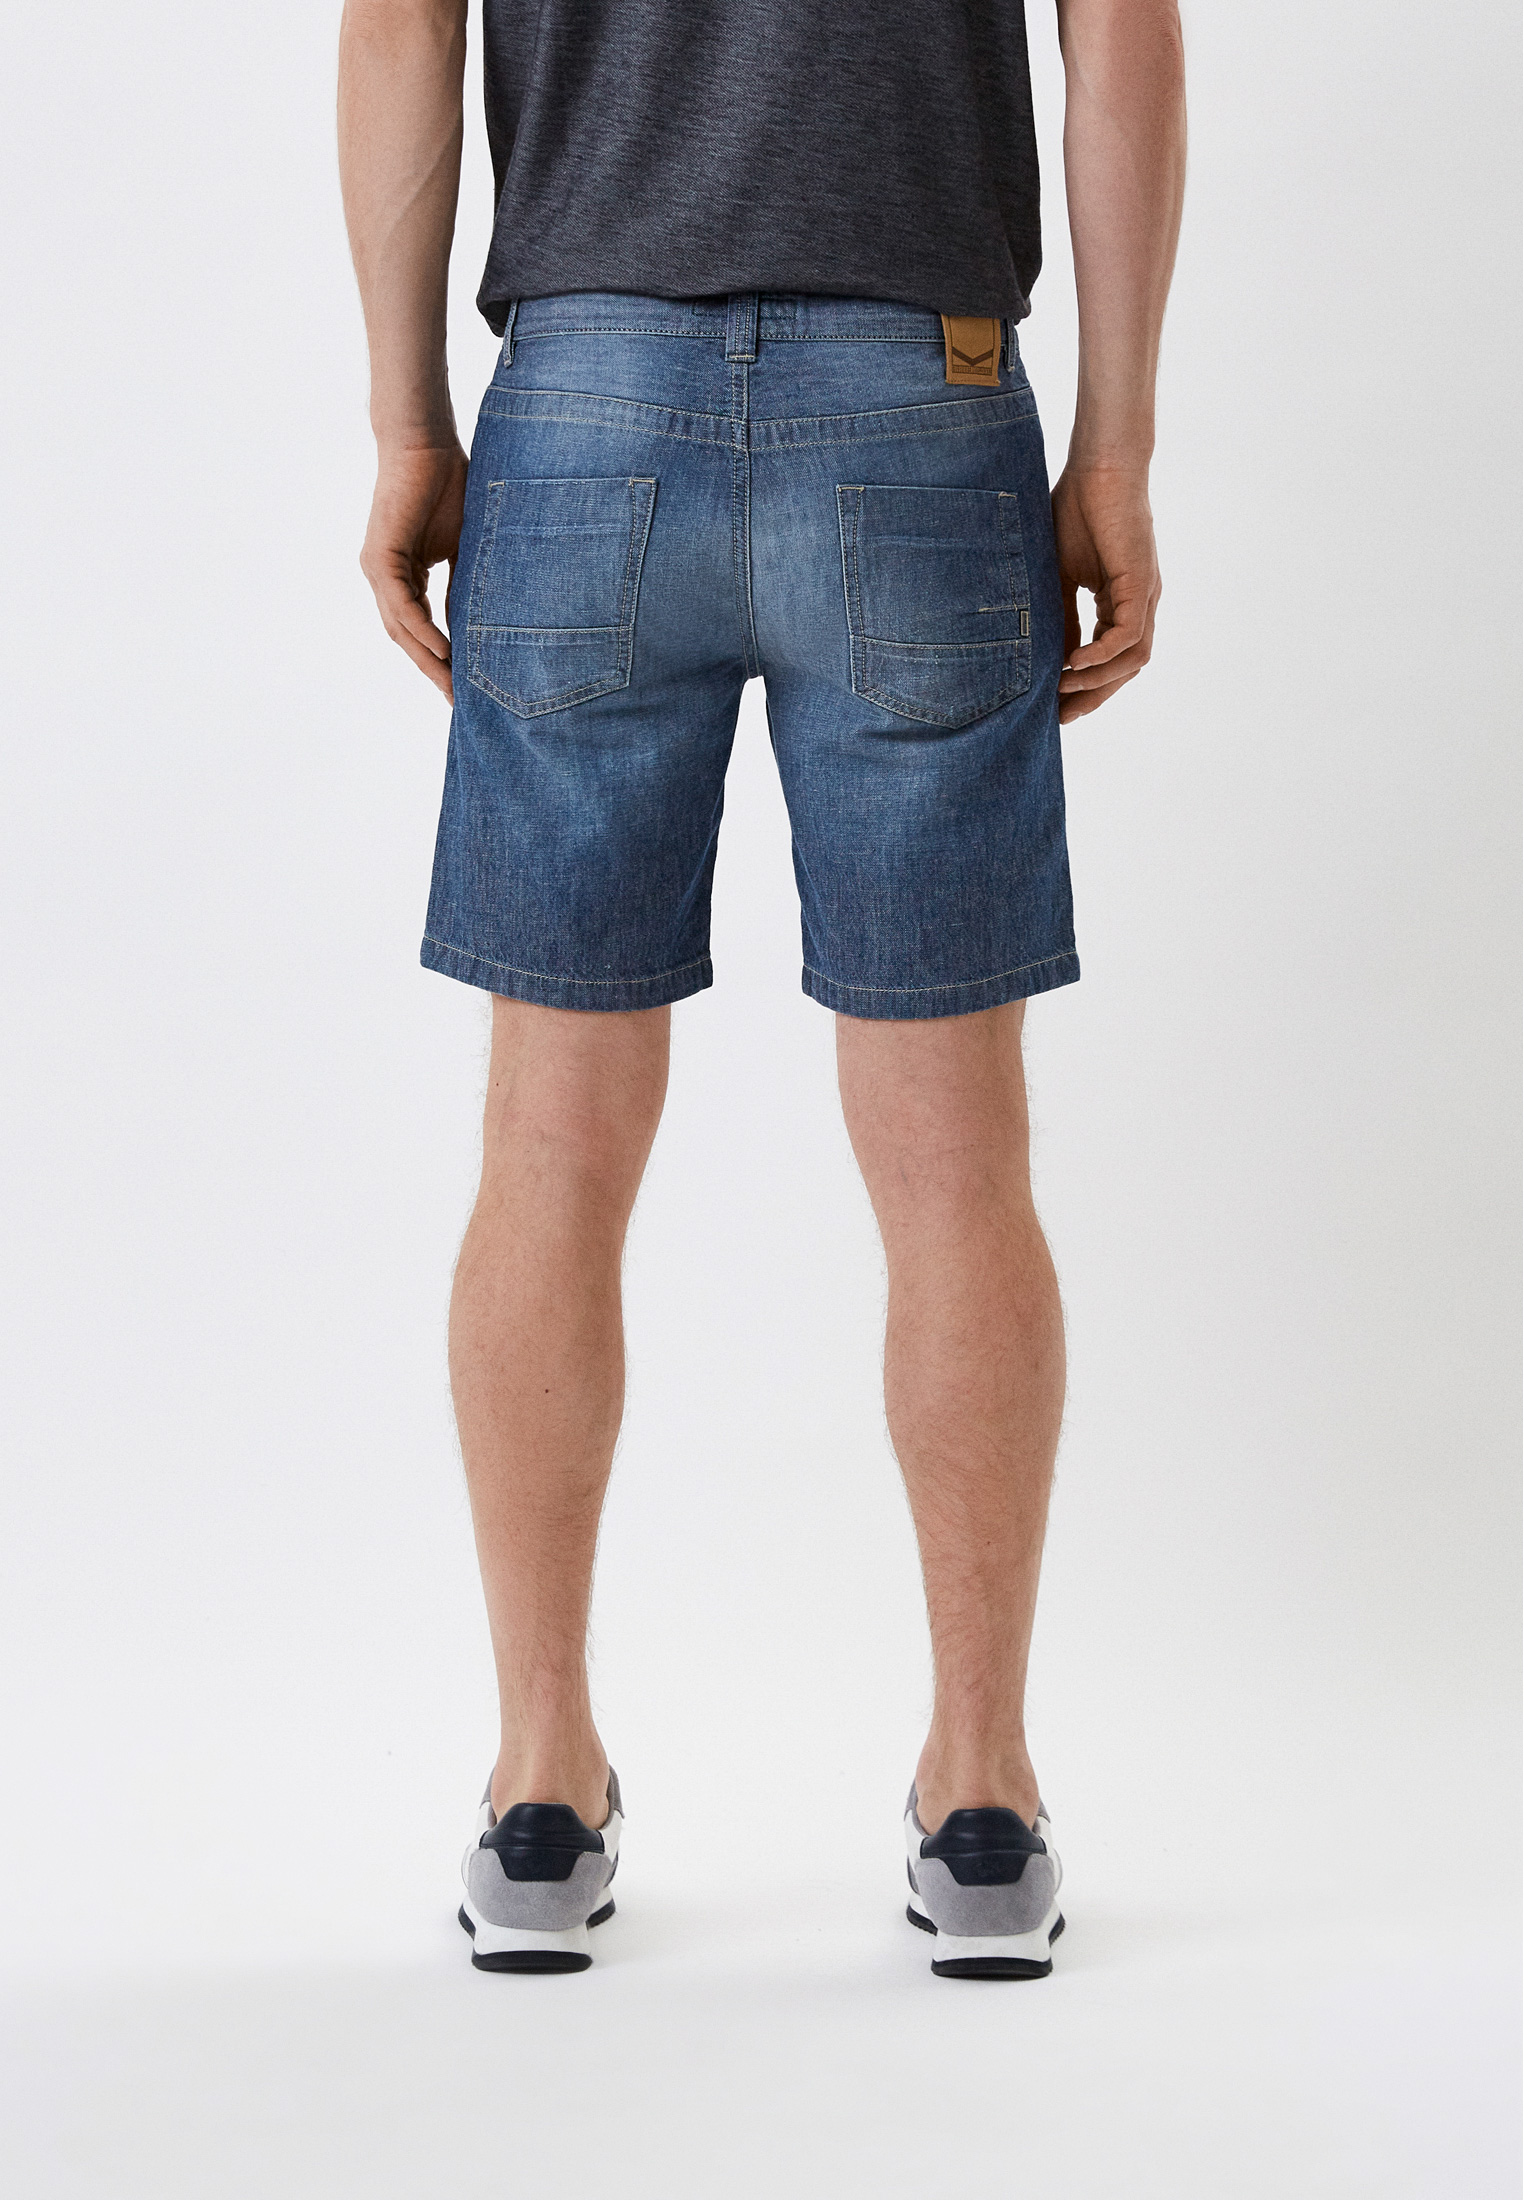 Мужские джинсовые шорты Bikkembergs (Биккембергс) C O 102 00 T 9765: изображение 3